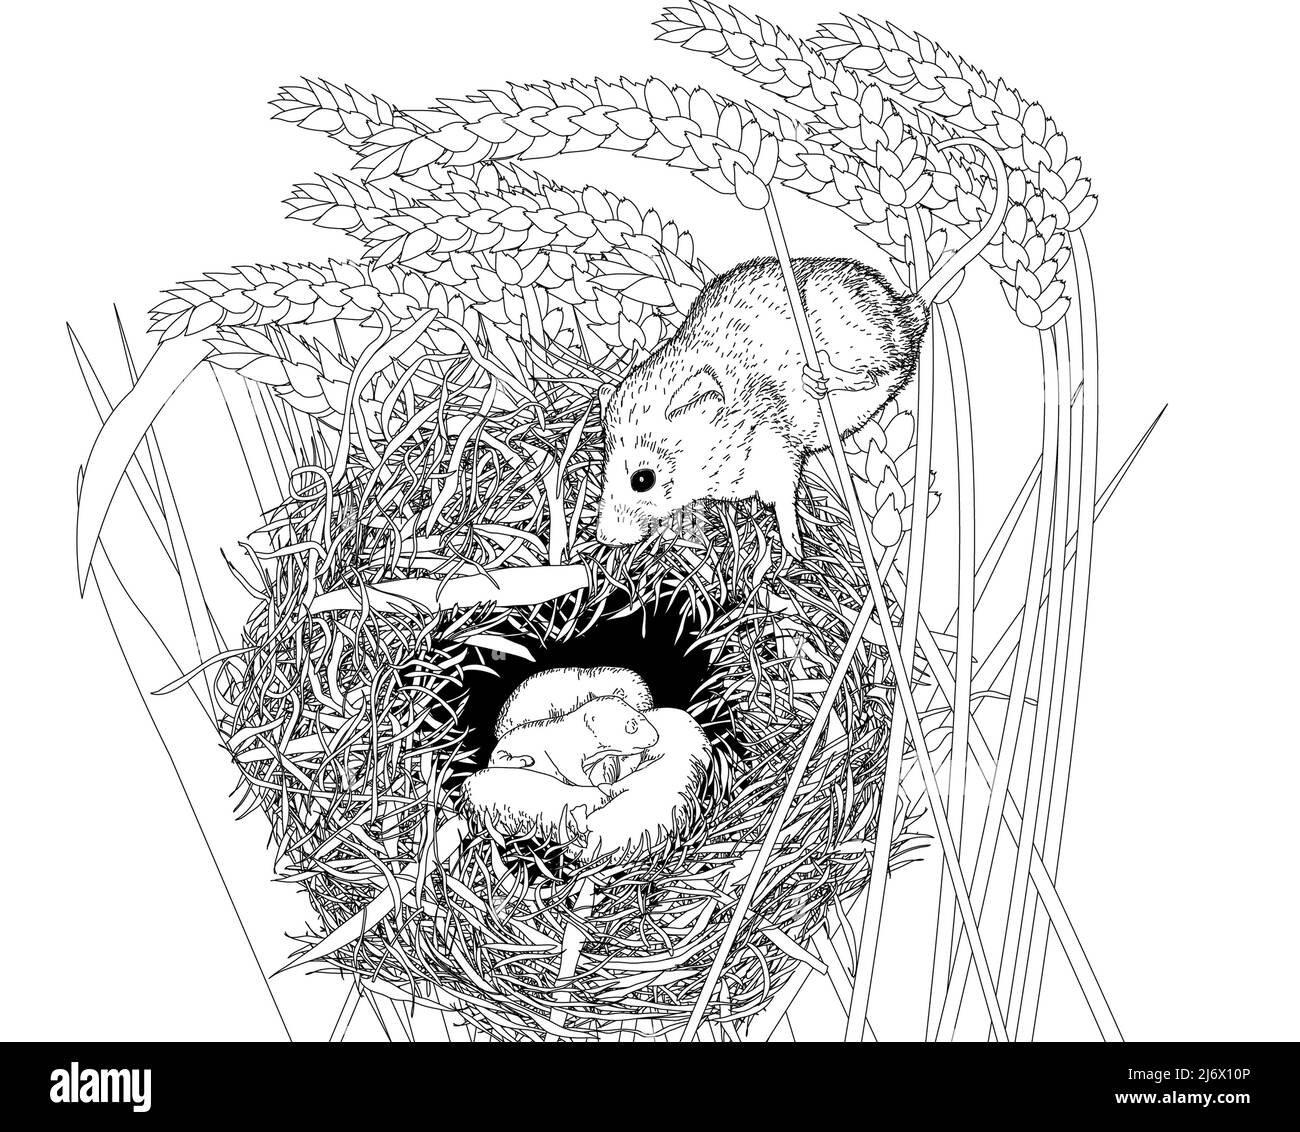 Schwarz-weiße Liniendarstellung einer europäischen Holzmaus (Apodemus sylvaticus)/ Feldmaus auf ihrem Nest. Arbeitsblatt zu Buchkunst, Bildung, Aktivität. Stockfoto